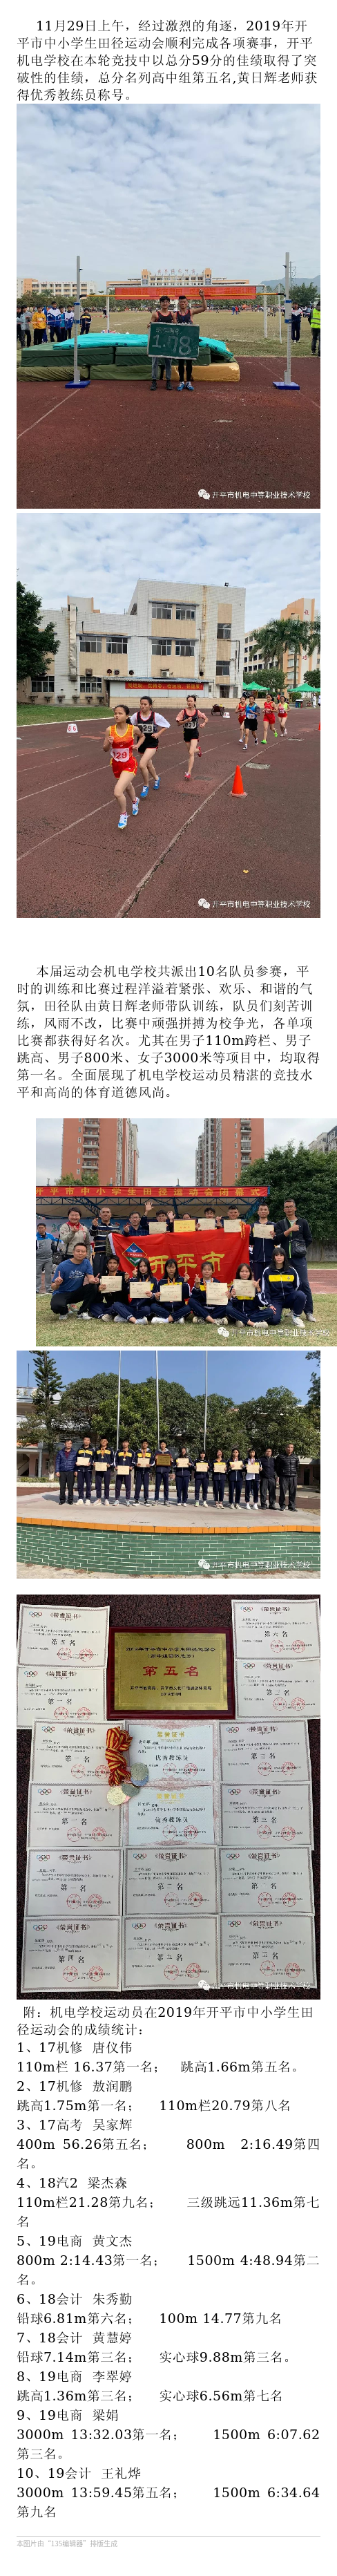 开平机电学校在2019年开平市中小学生田径运动会中取得突破性佳绩